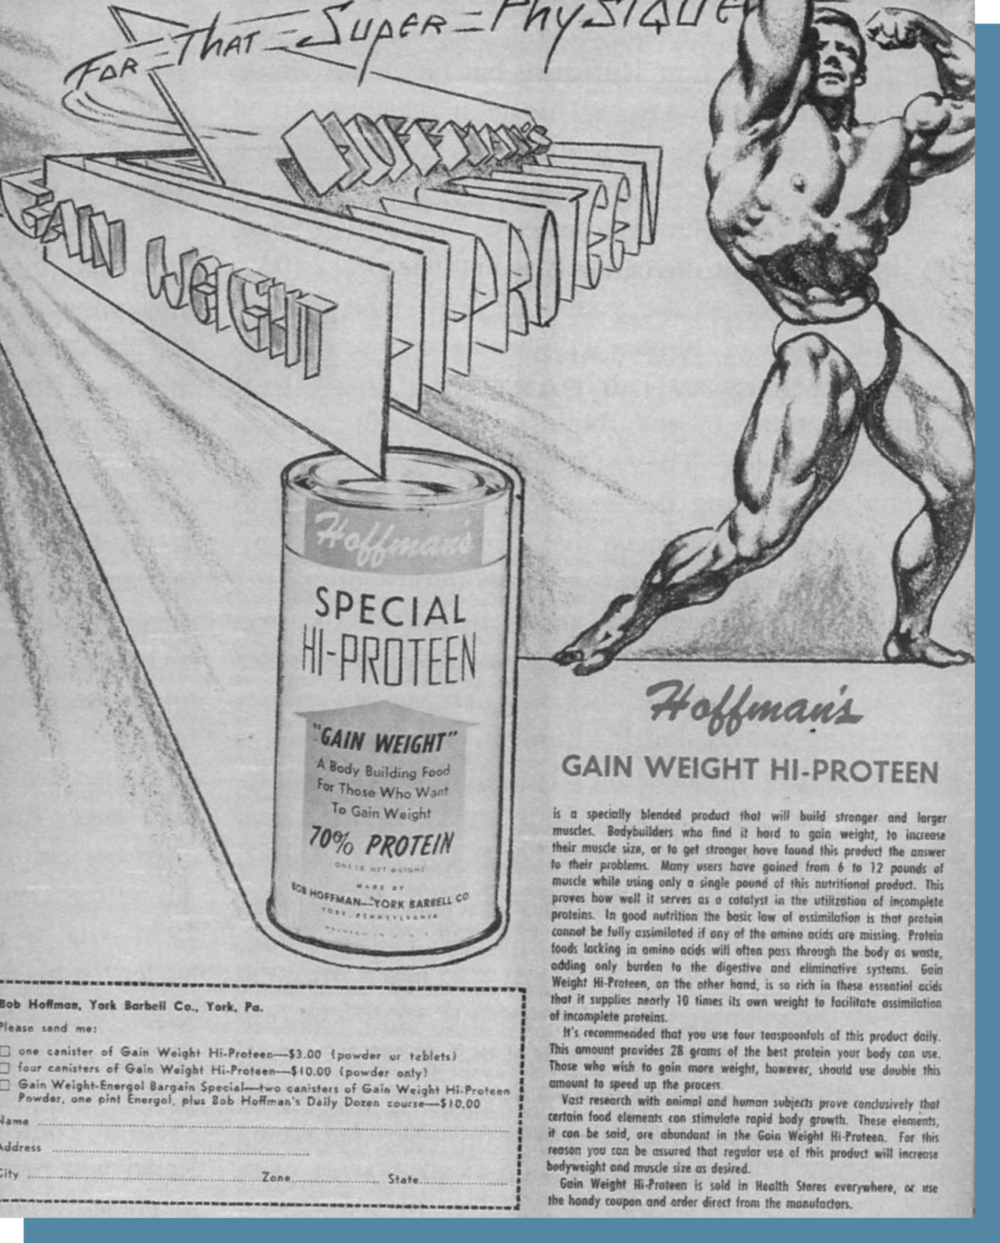 霍夫曼的蛋白粉广告声称：“许多使用者从仅仅 1 磅的蛋白粉中获得了 6 ~ 12 磅的肌肉。”© Physicalculturestudy.com